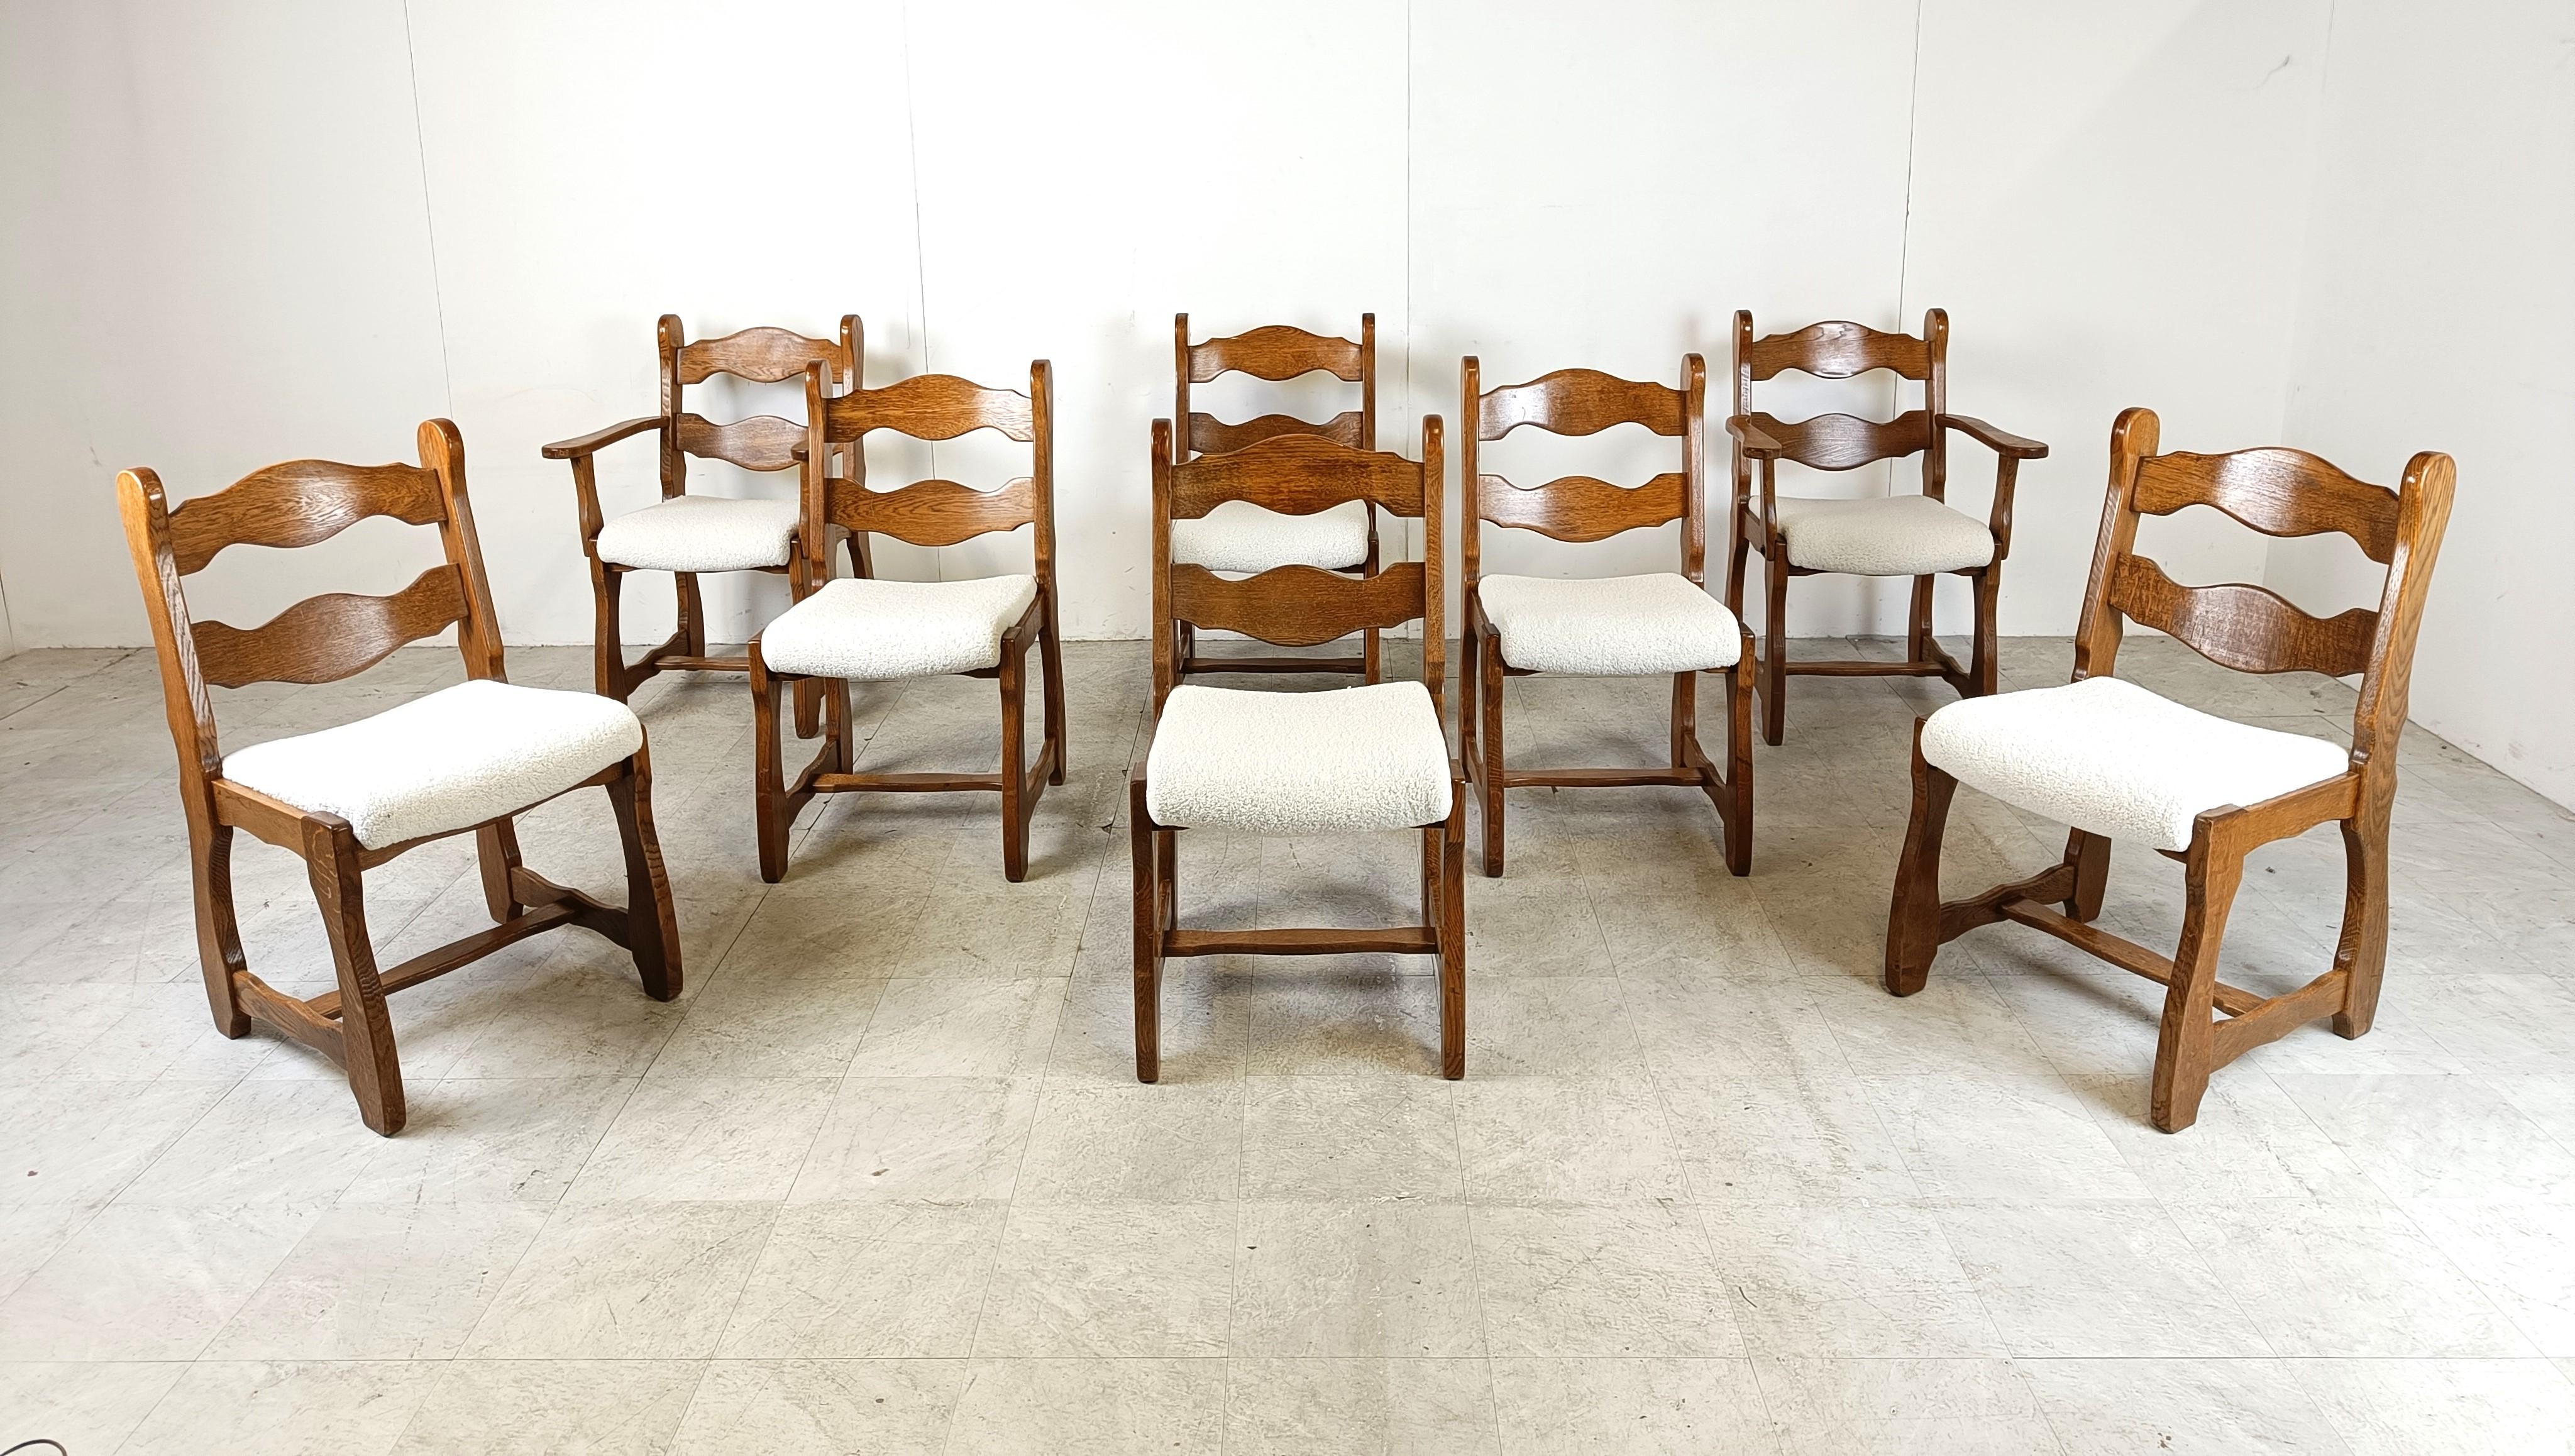 Brutalist Vintage brutalist dining chairs, set of 8 - 1960s